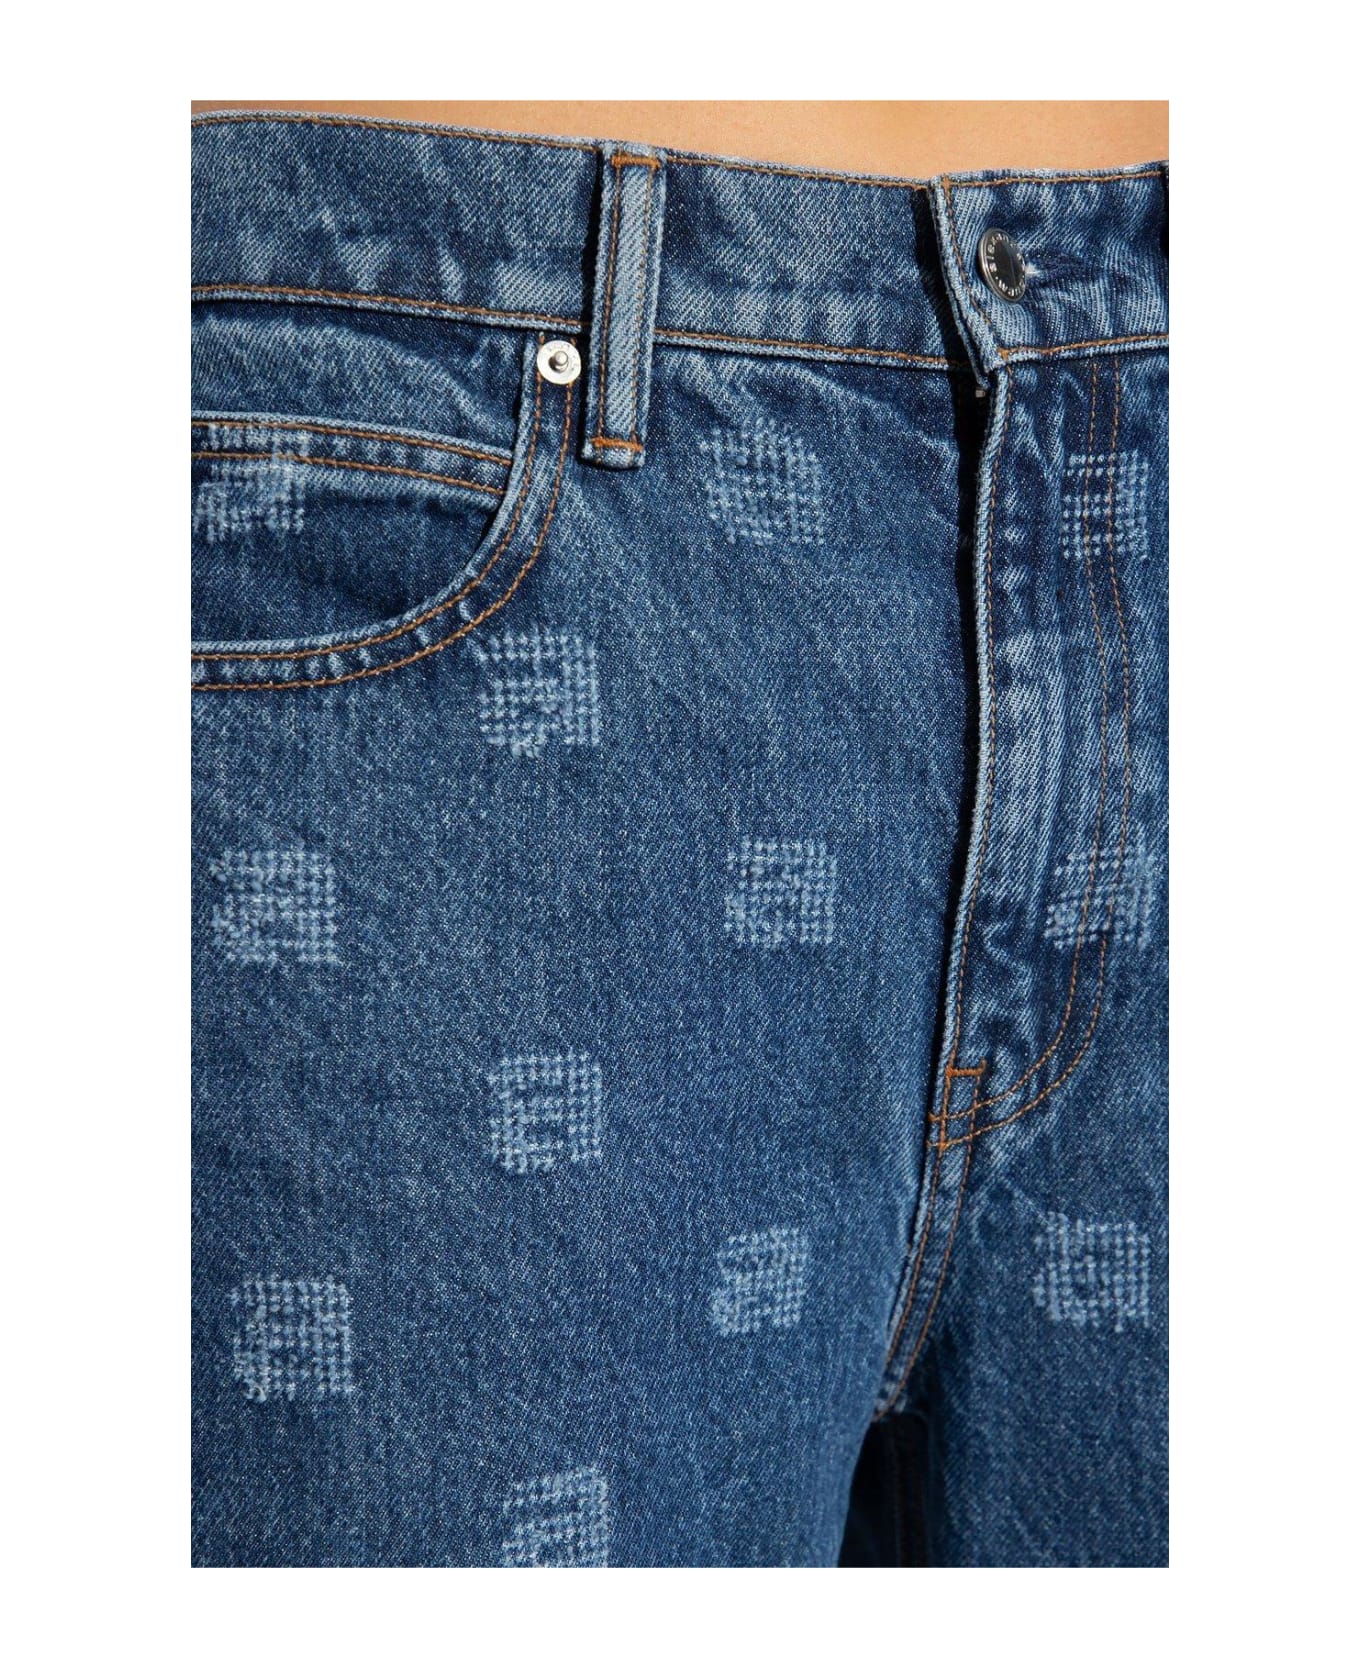 Alexander Wang Logo Detailed Jeans - Deep Blue デニム